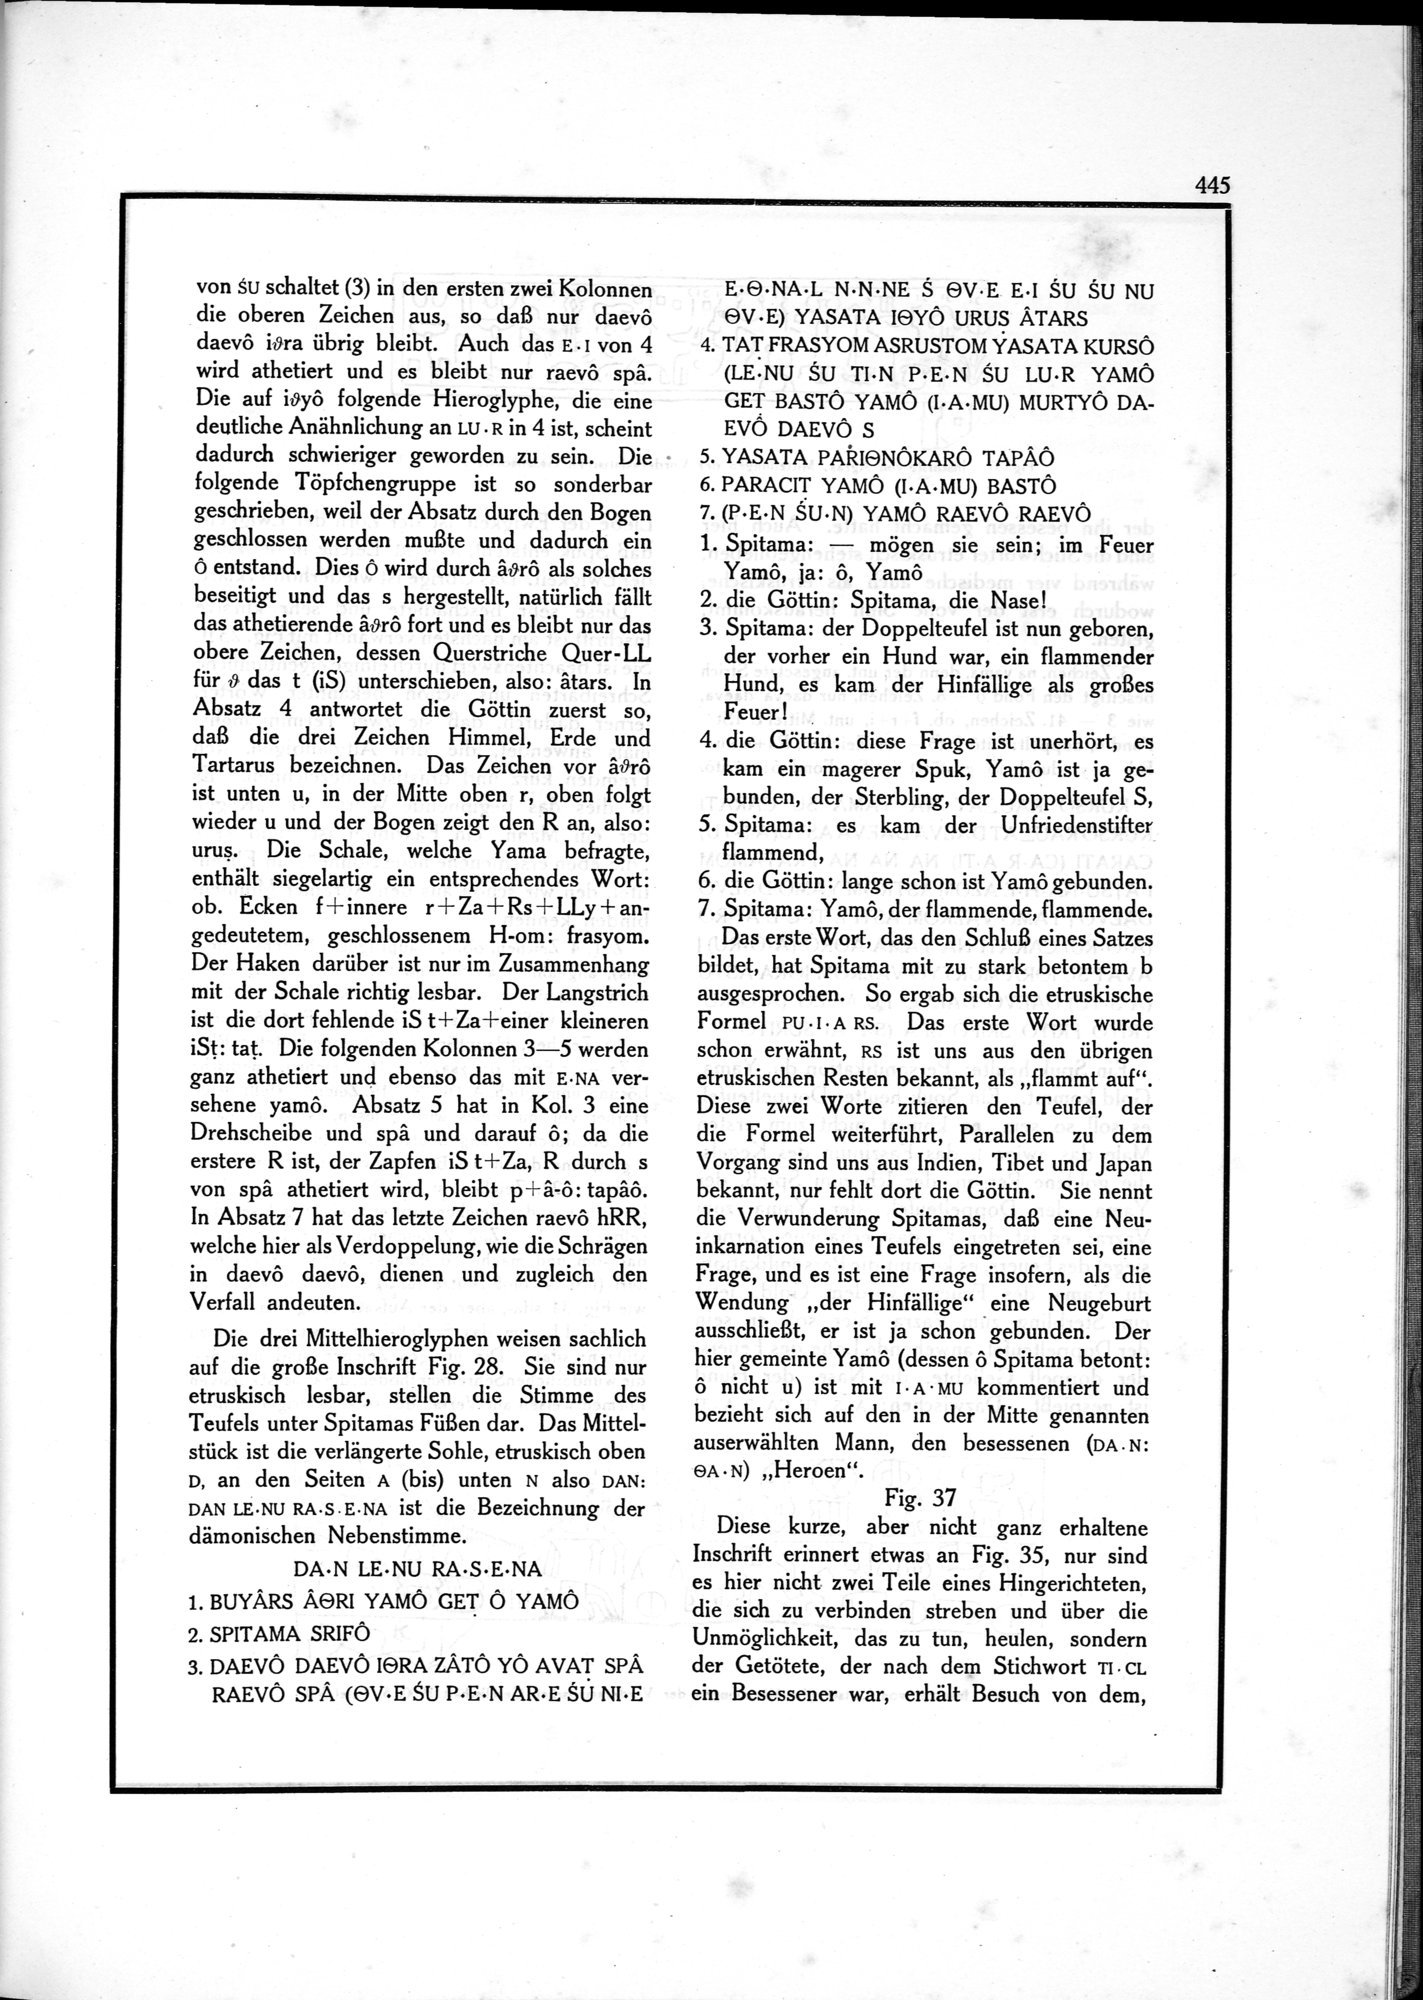 Die Teufel des Avesta und Ihre Beziehungen zur Ikonographie des Buddhismus Zentral-Asiens : vol.1 / Page 449 (Grayscale High Resolution Image)